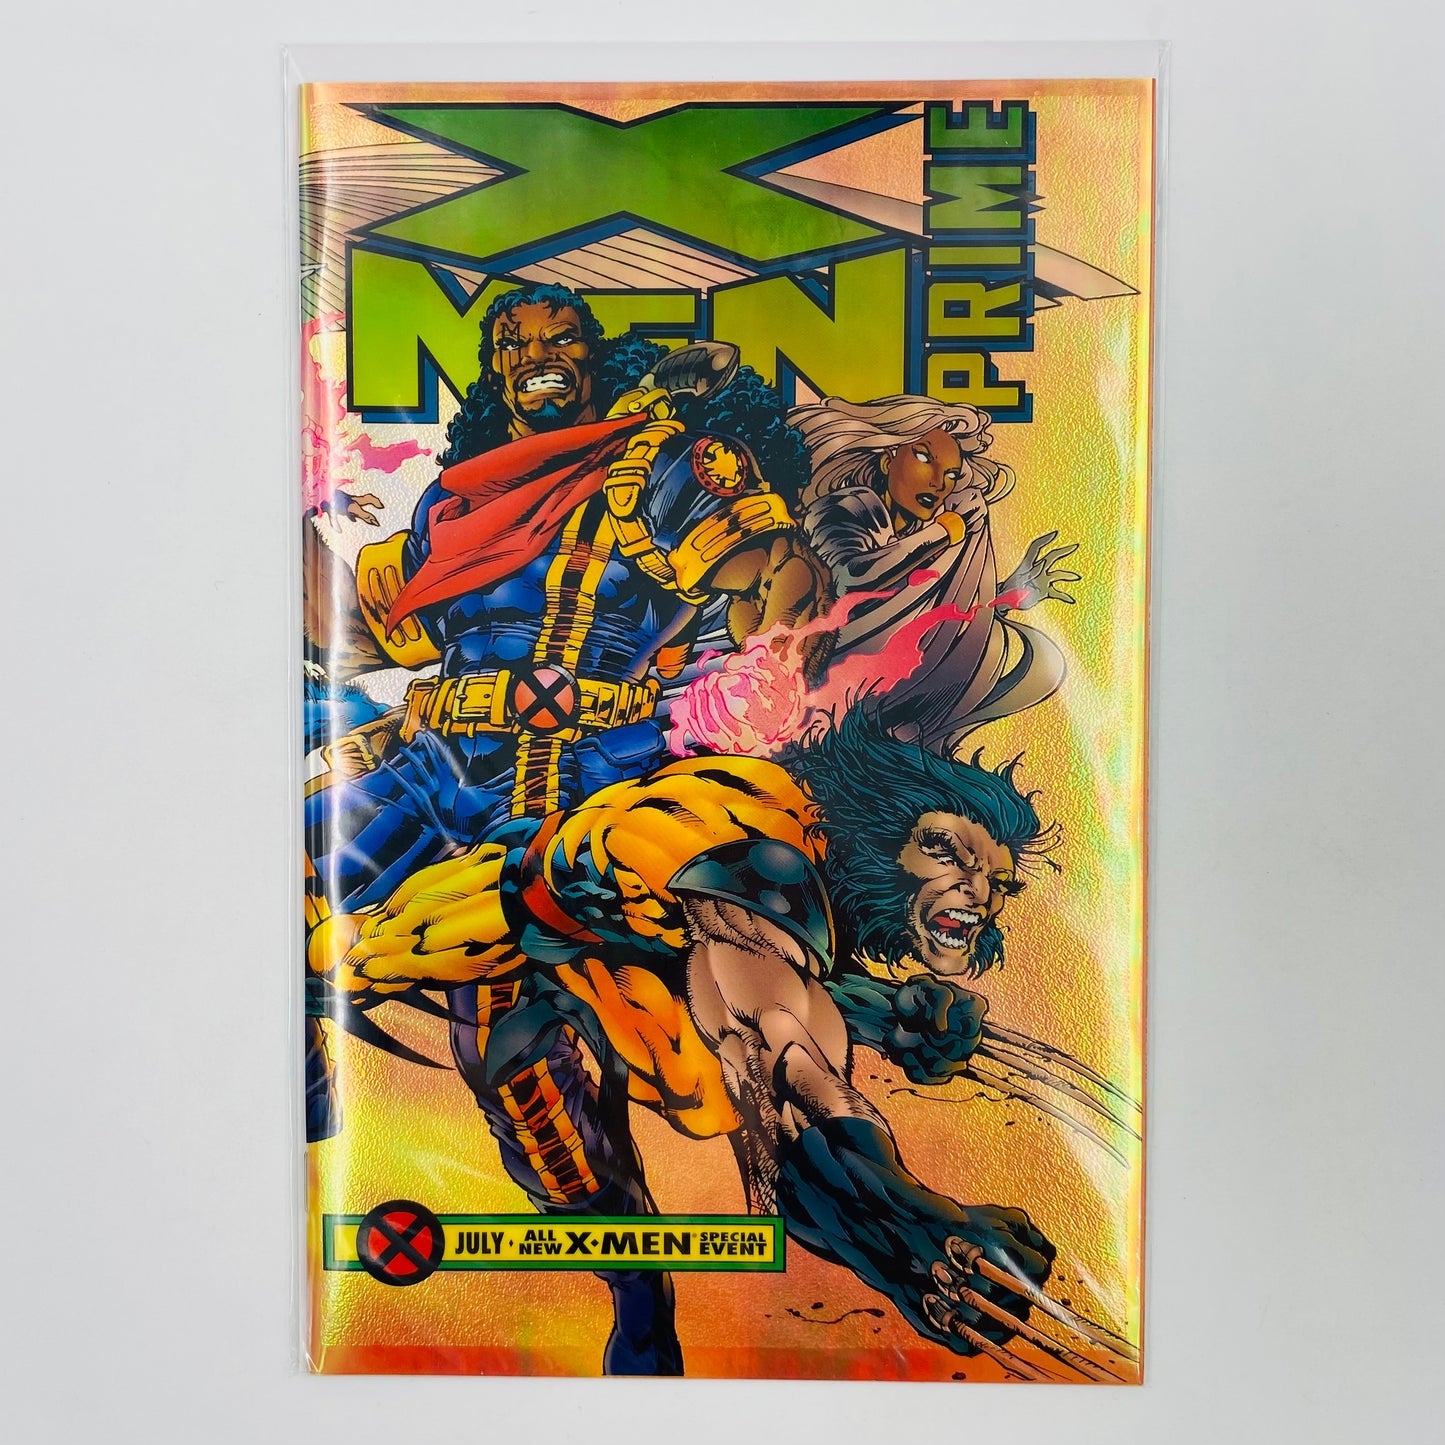 X-Men Prime #1 (1995) Marvel